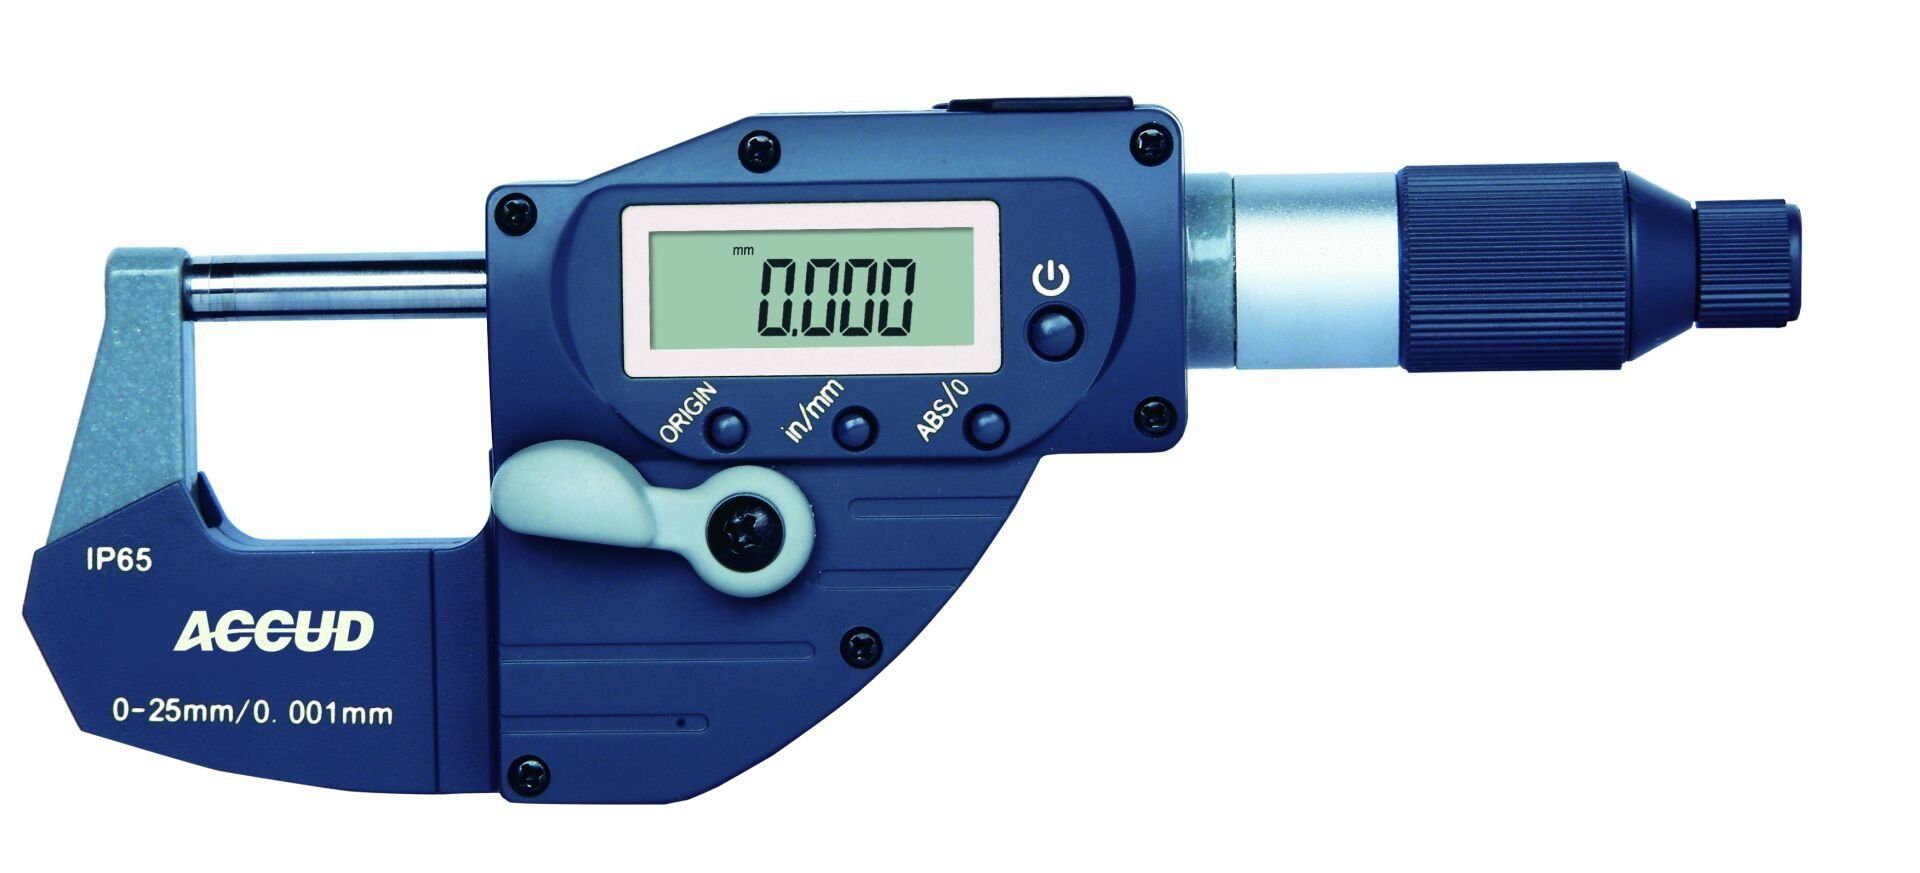 Accud Dijital Mikrometre 314 Serisi - Hızlı Ölçüm 25-50 mm